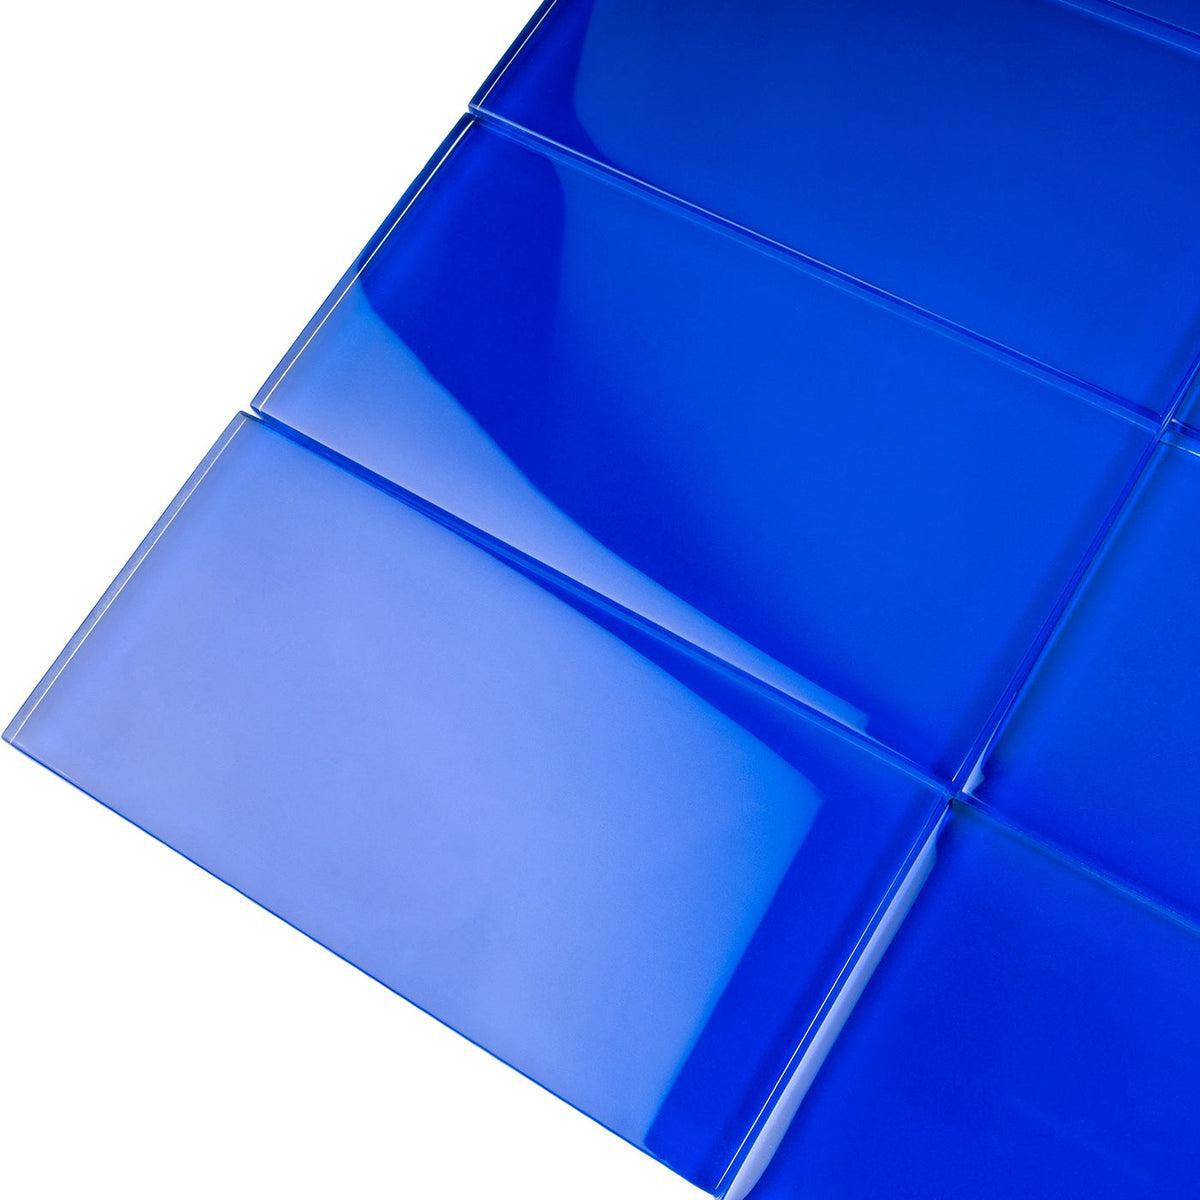 Glacier Cobalt Blue 3X6 Polished Glass Tile